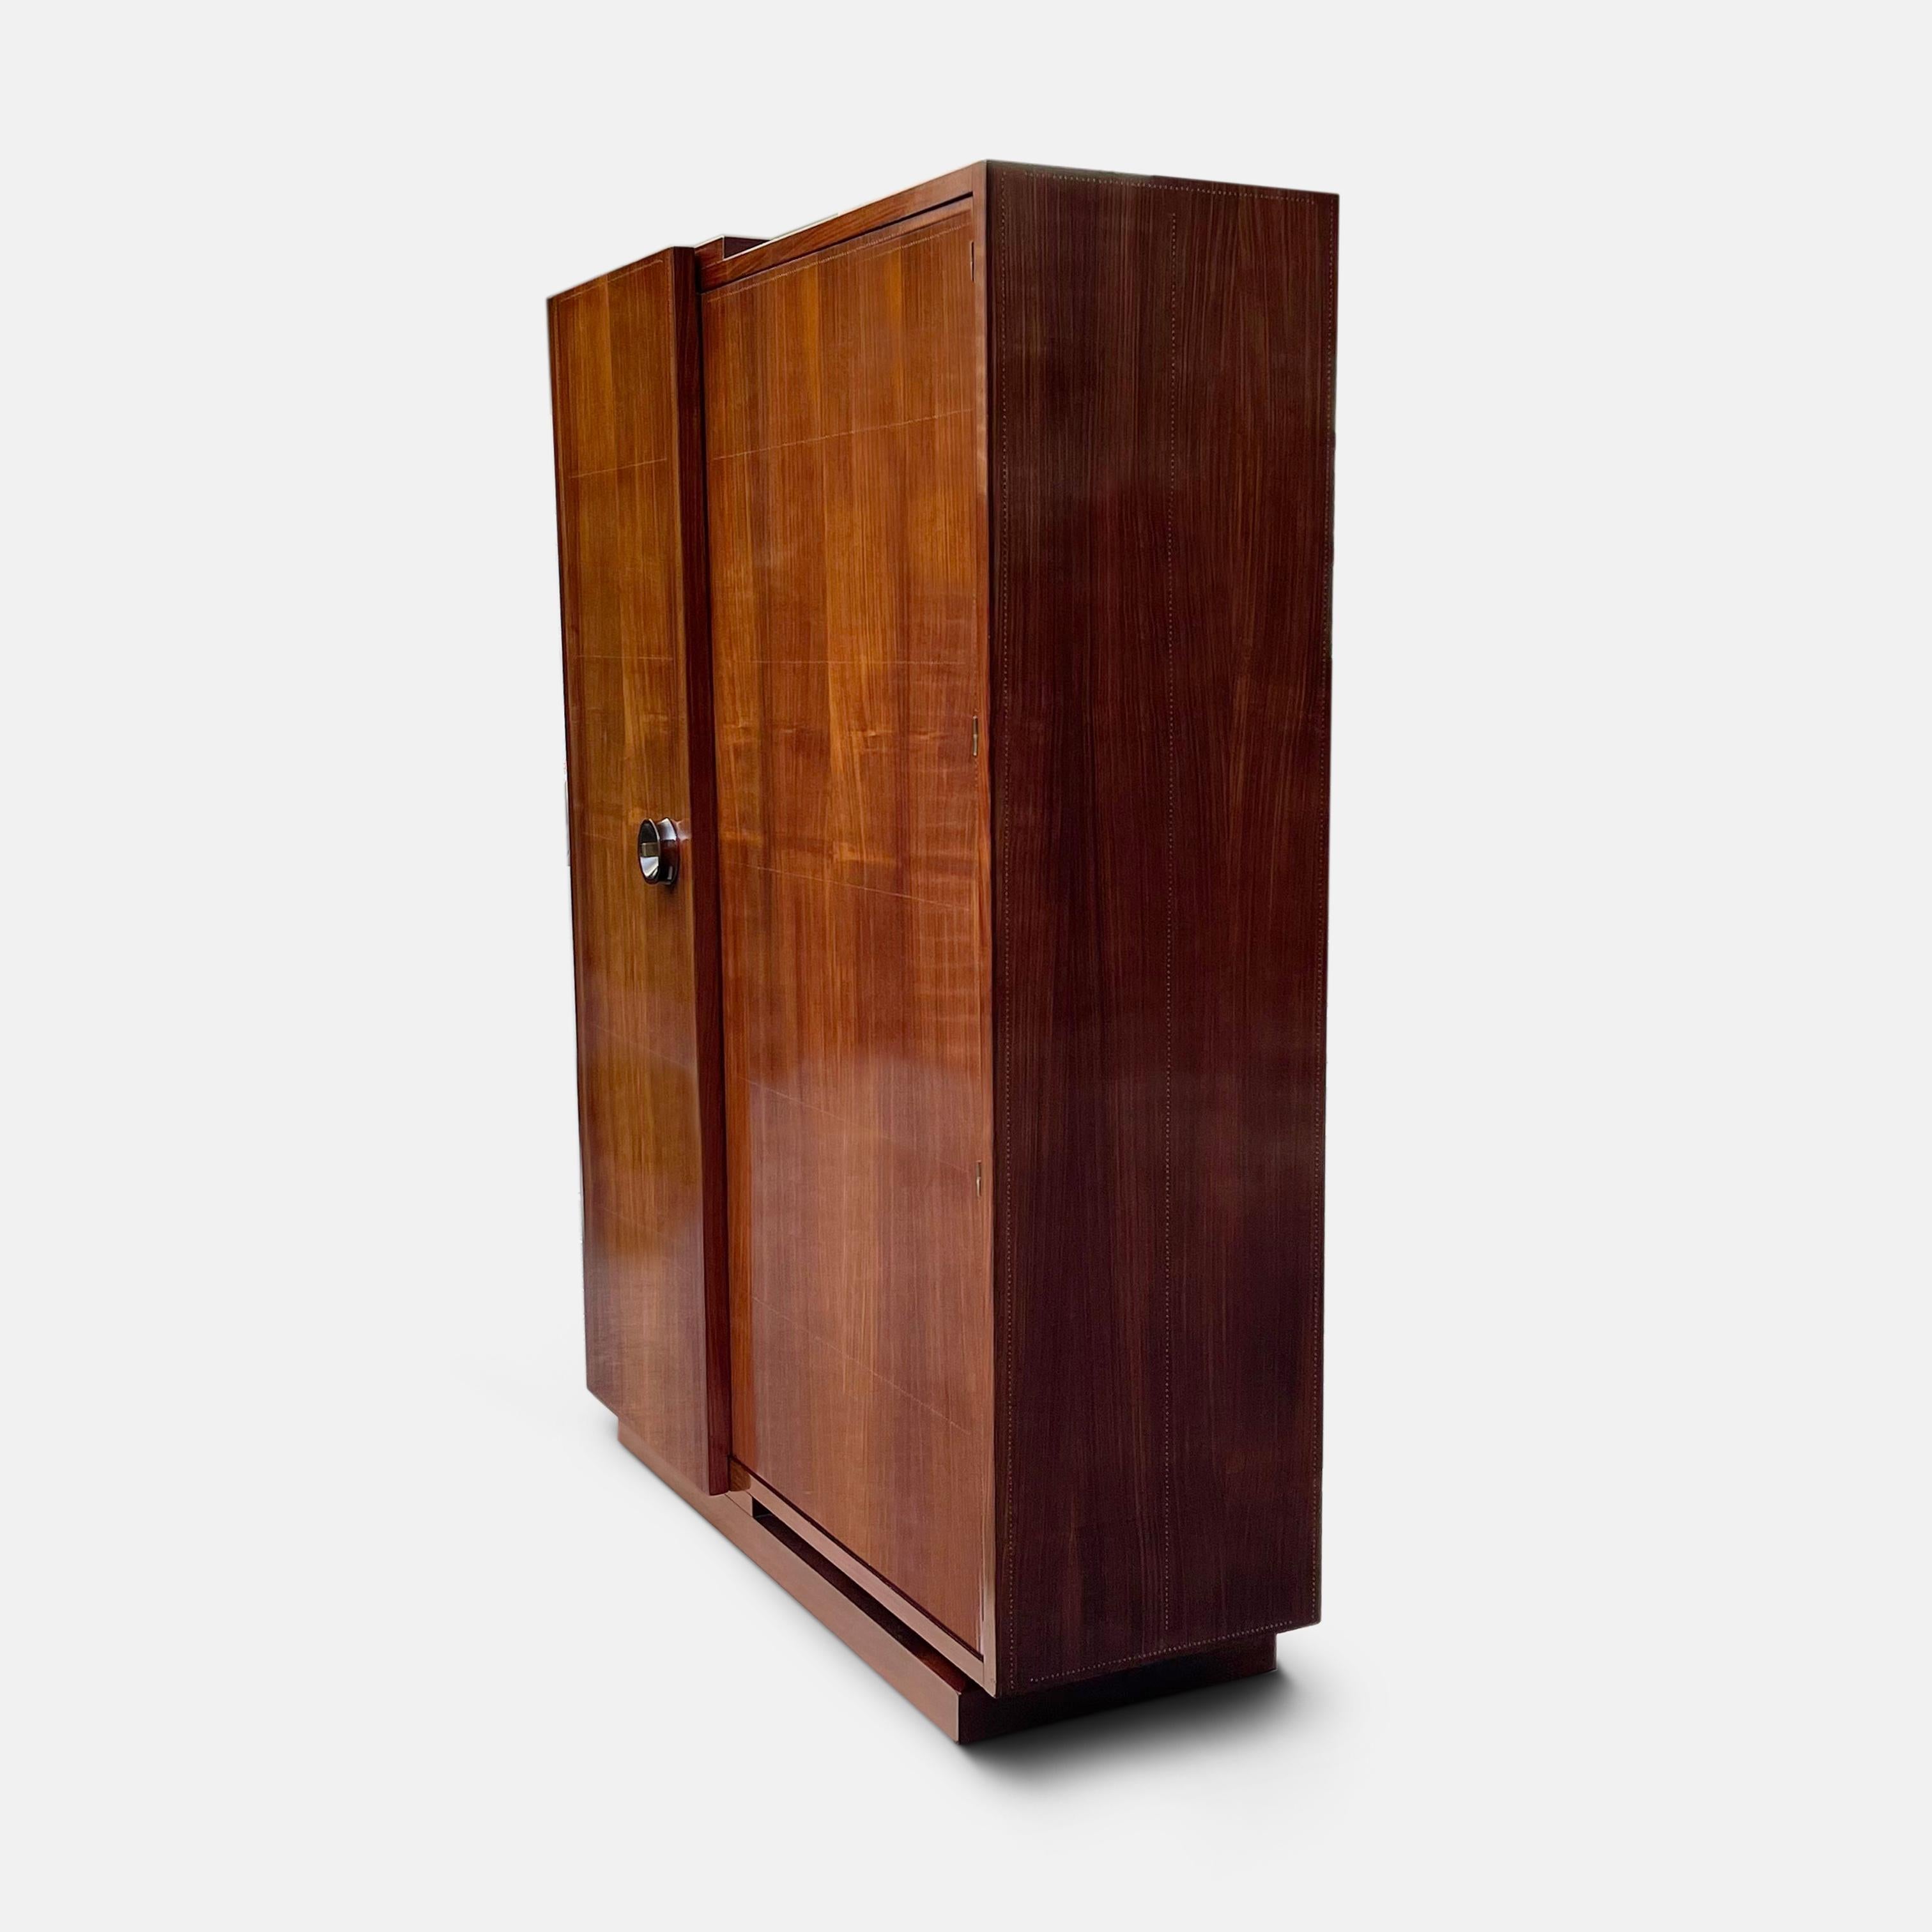 Dieser meisterhafte und außergewöhnlich proportionierte modernistische Kleiderschrank von André Sornay zeigt, warum sein Ansehen als einer der wichtigsten Designer der Art-Déco-Periode im Laufe der Zeit nur gewachsen ist. Unermüdlich und